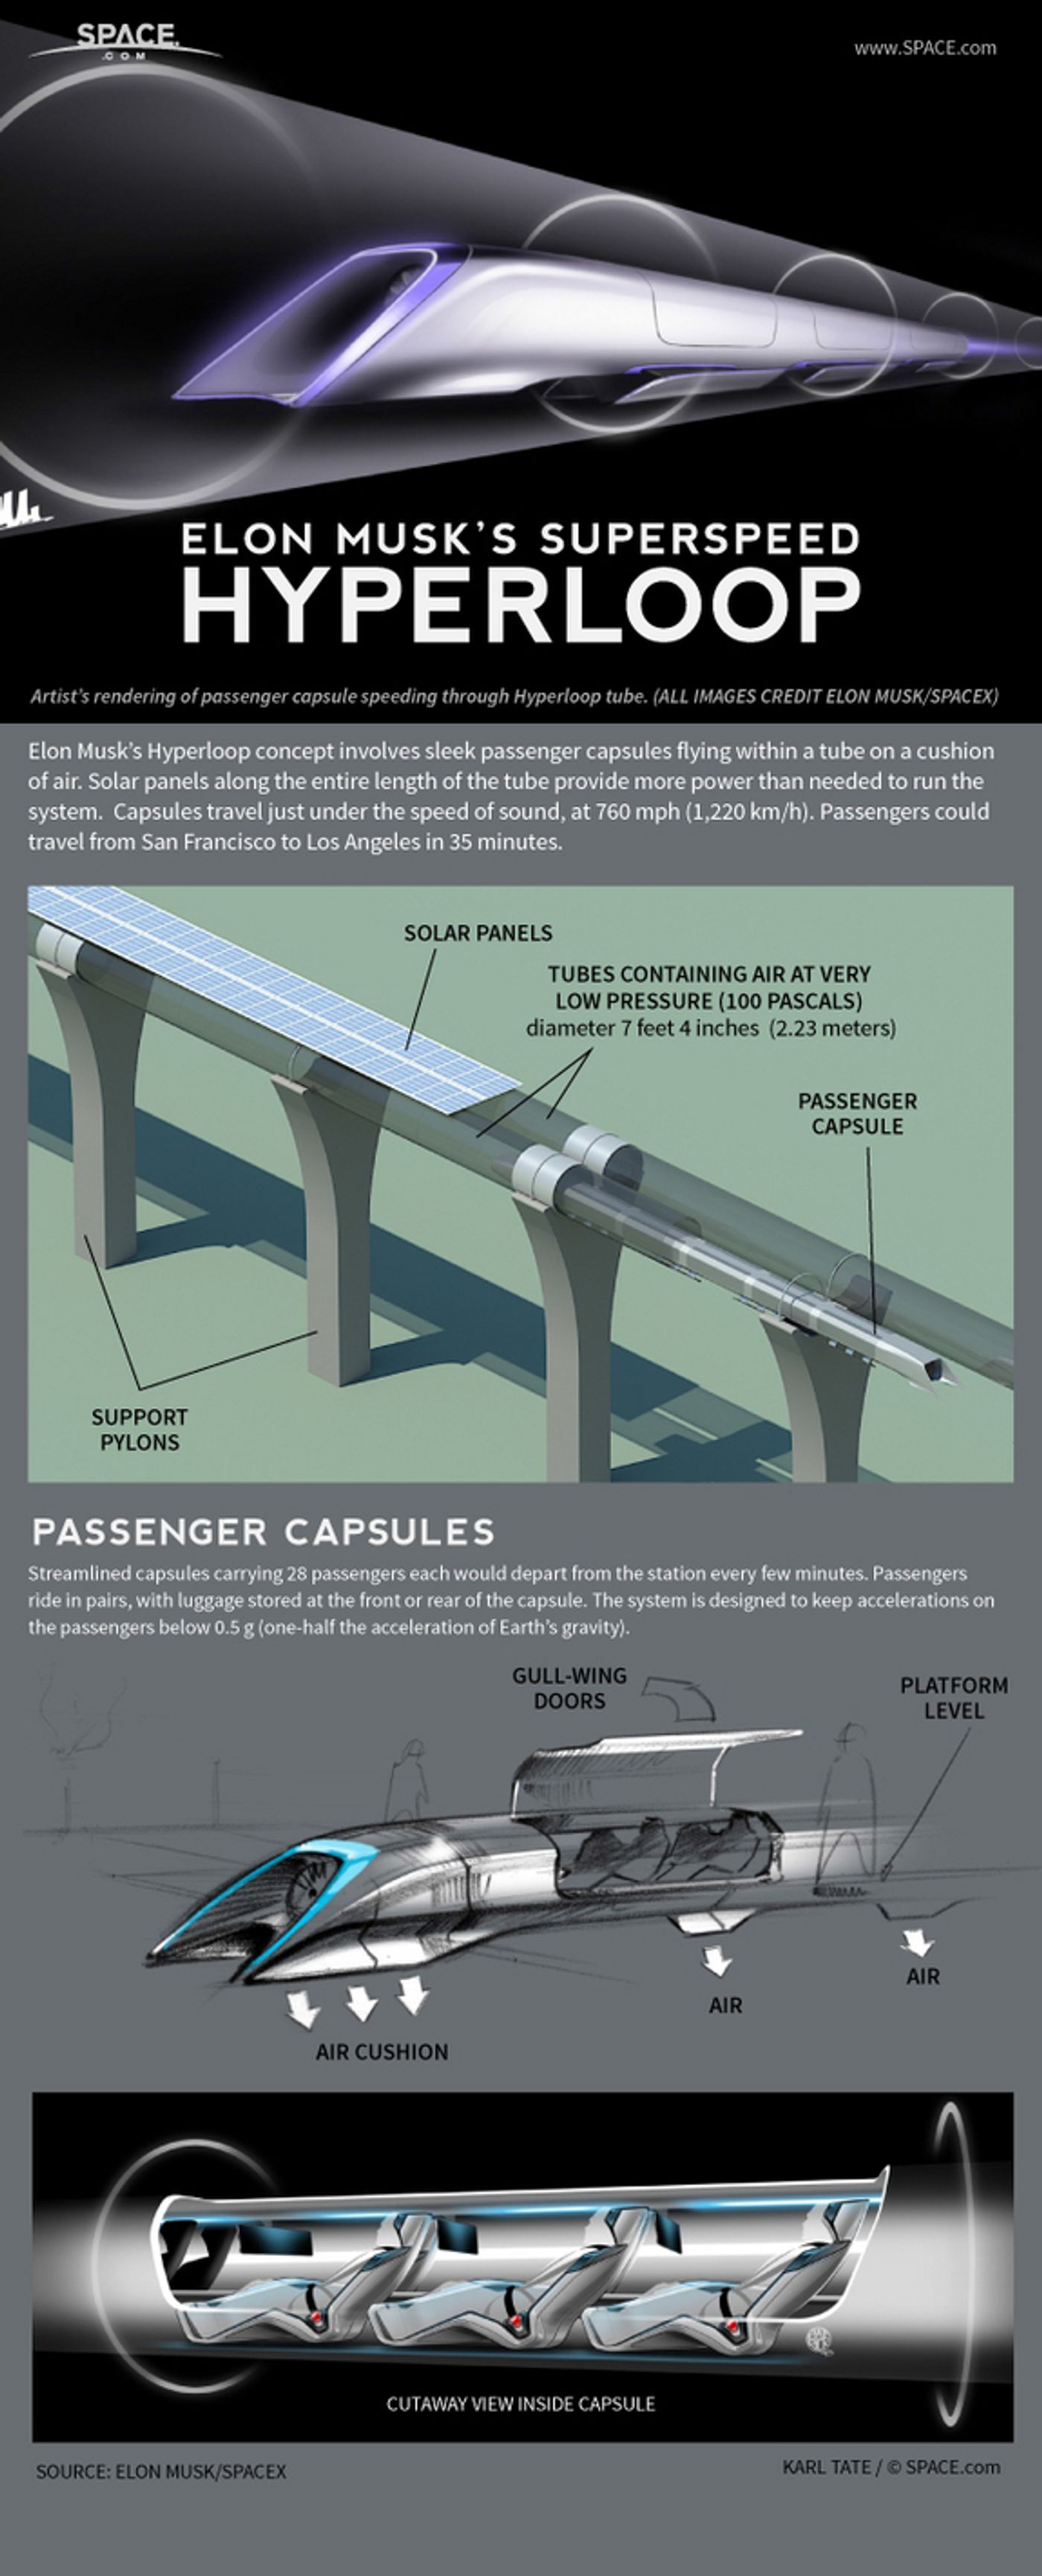 Elon Musk's New Form Of Public Transportation: The Hyperloop